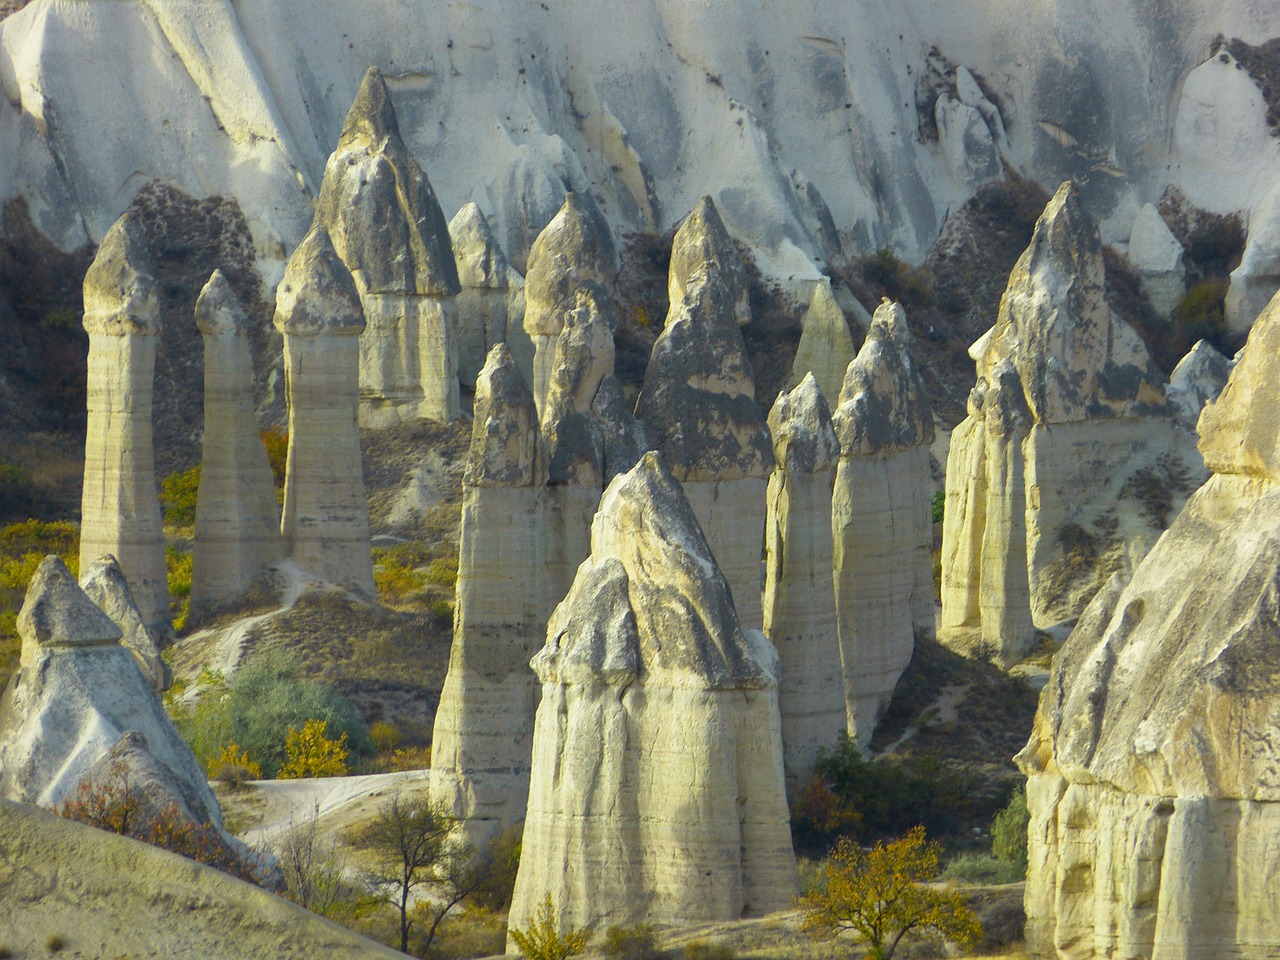 fairy chimneys tufa rock formations free photo